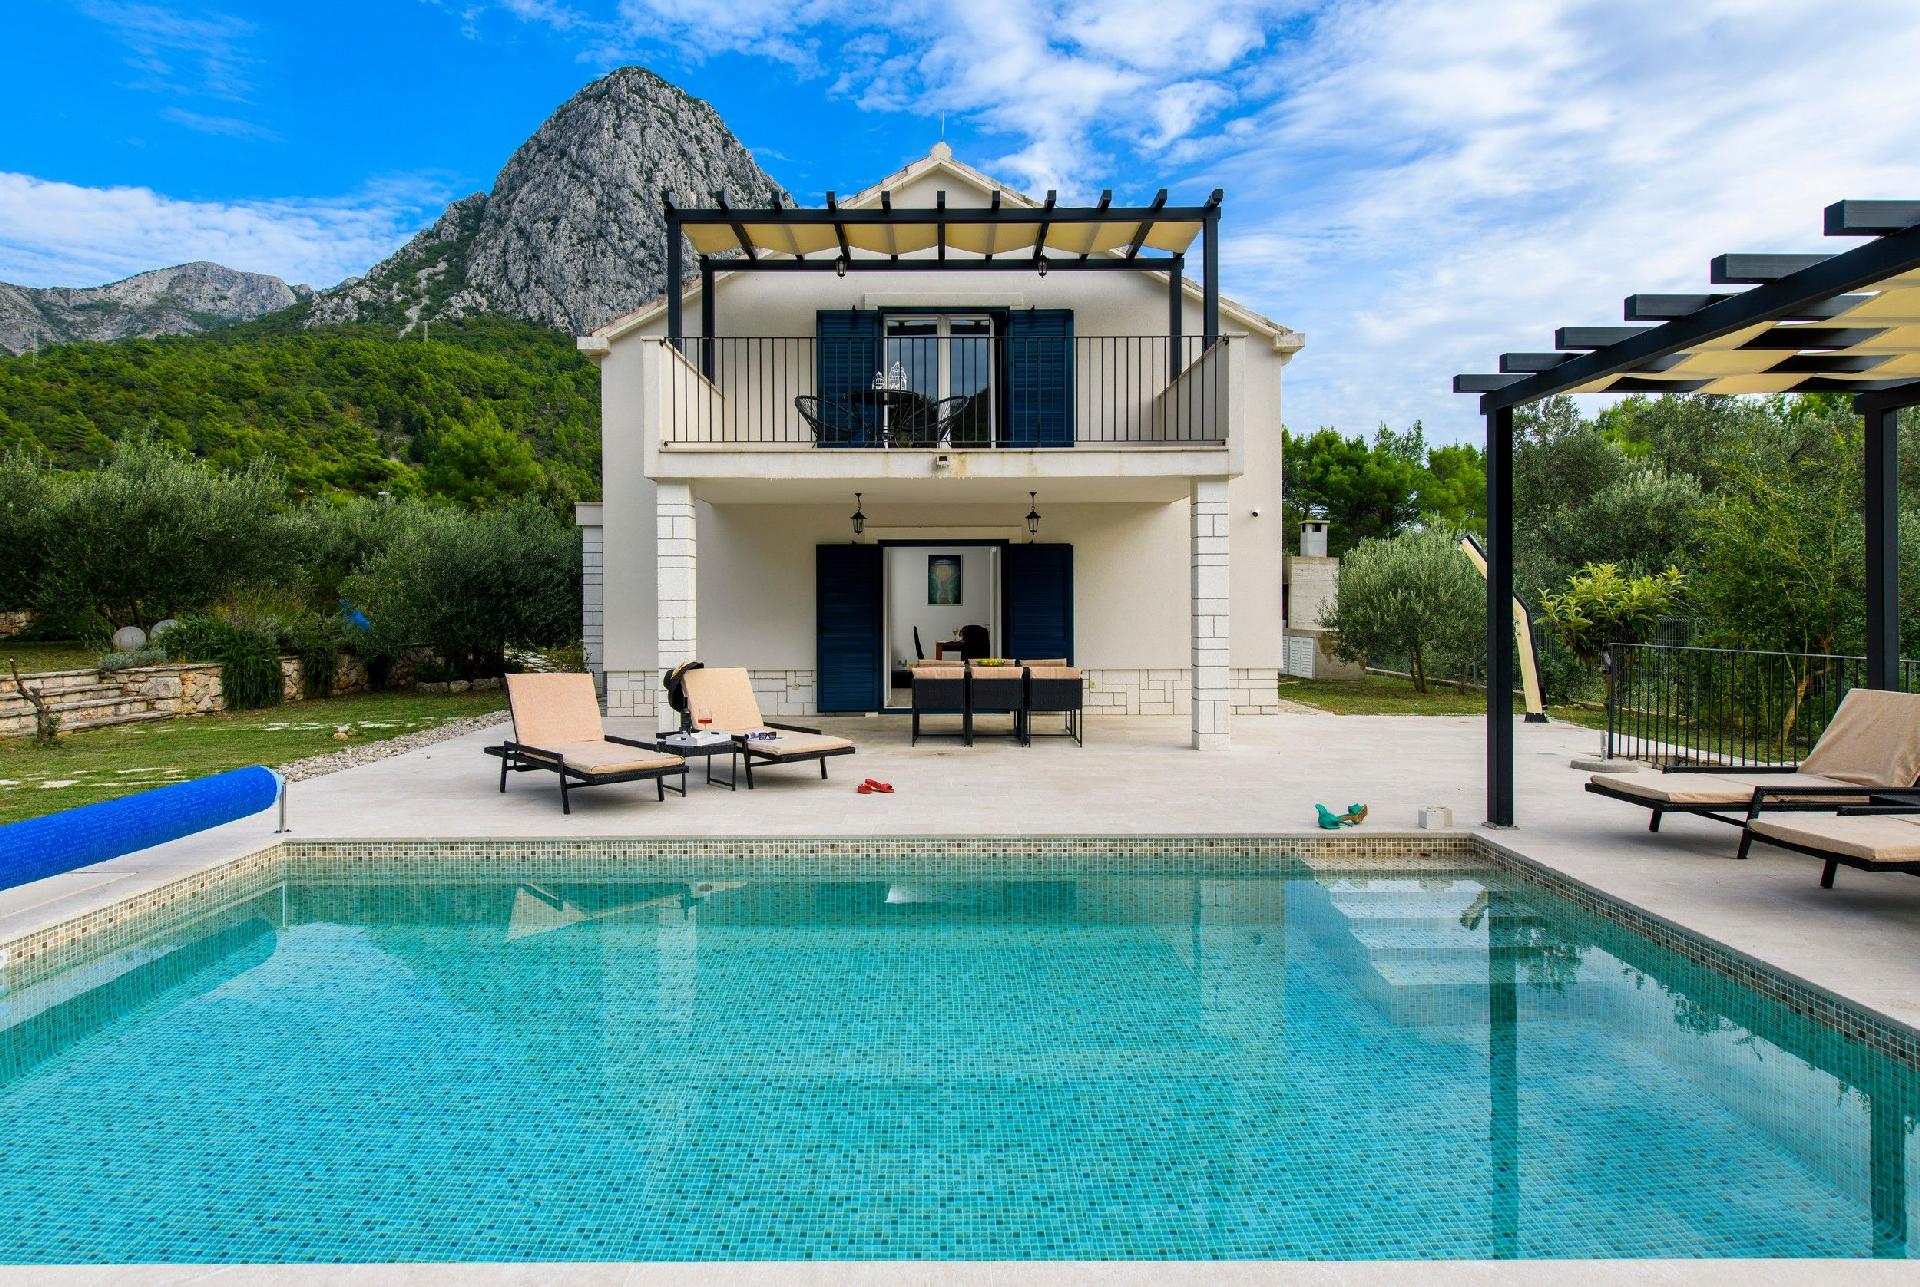 Alleinstehendes Ferienhaus mit Pool und drei Schla Ferienhaus in Kroatien